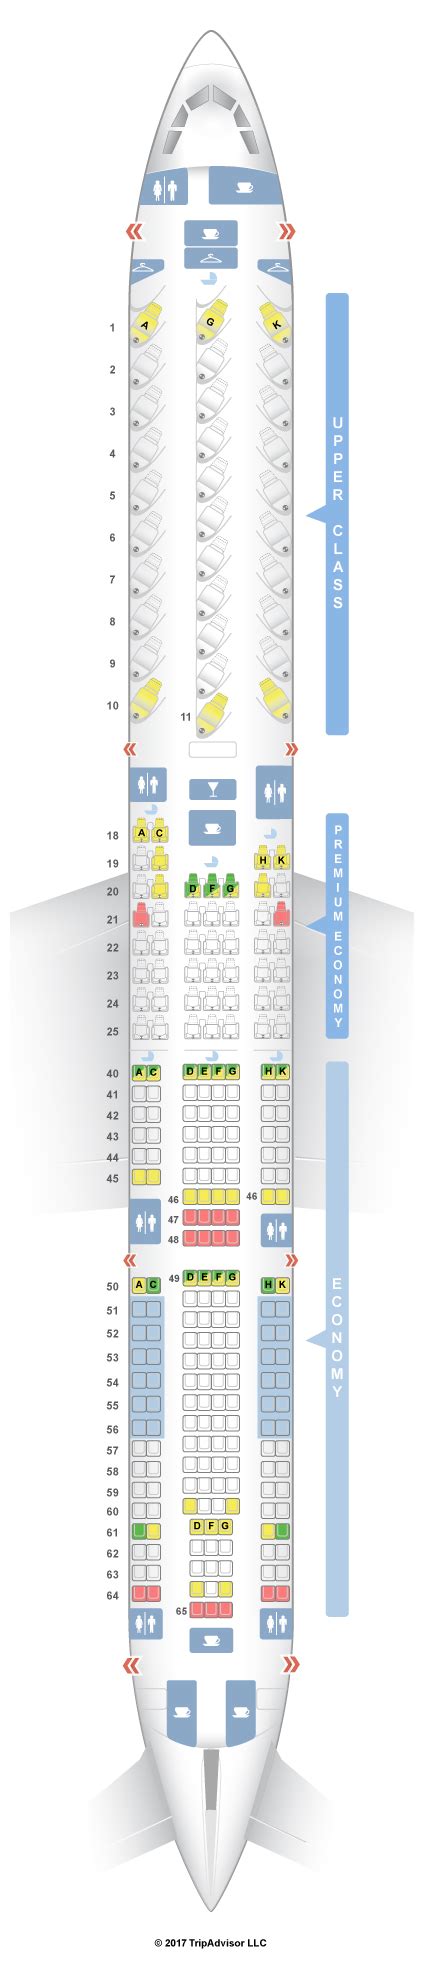 Seatguru Seat Map Virgin Atlantic Airbus A330 300 333 V2